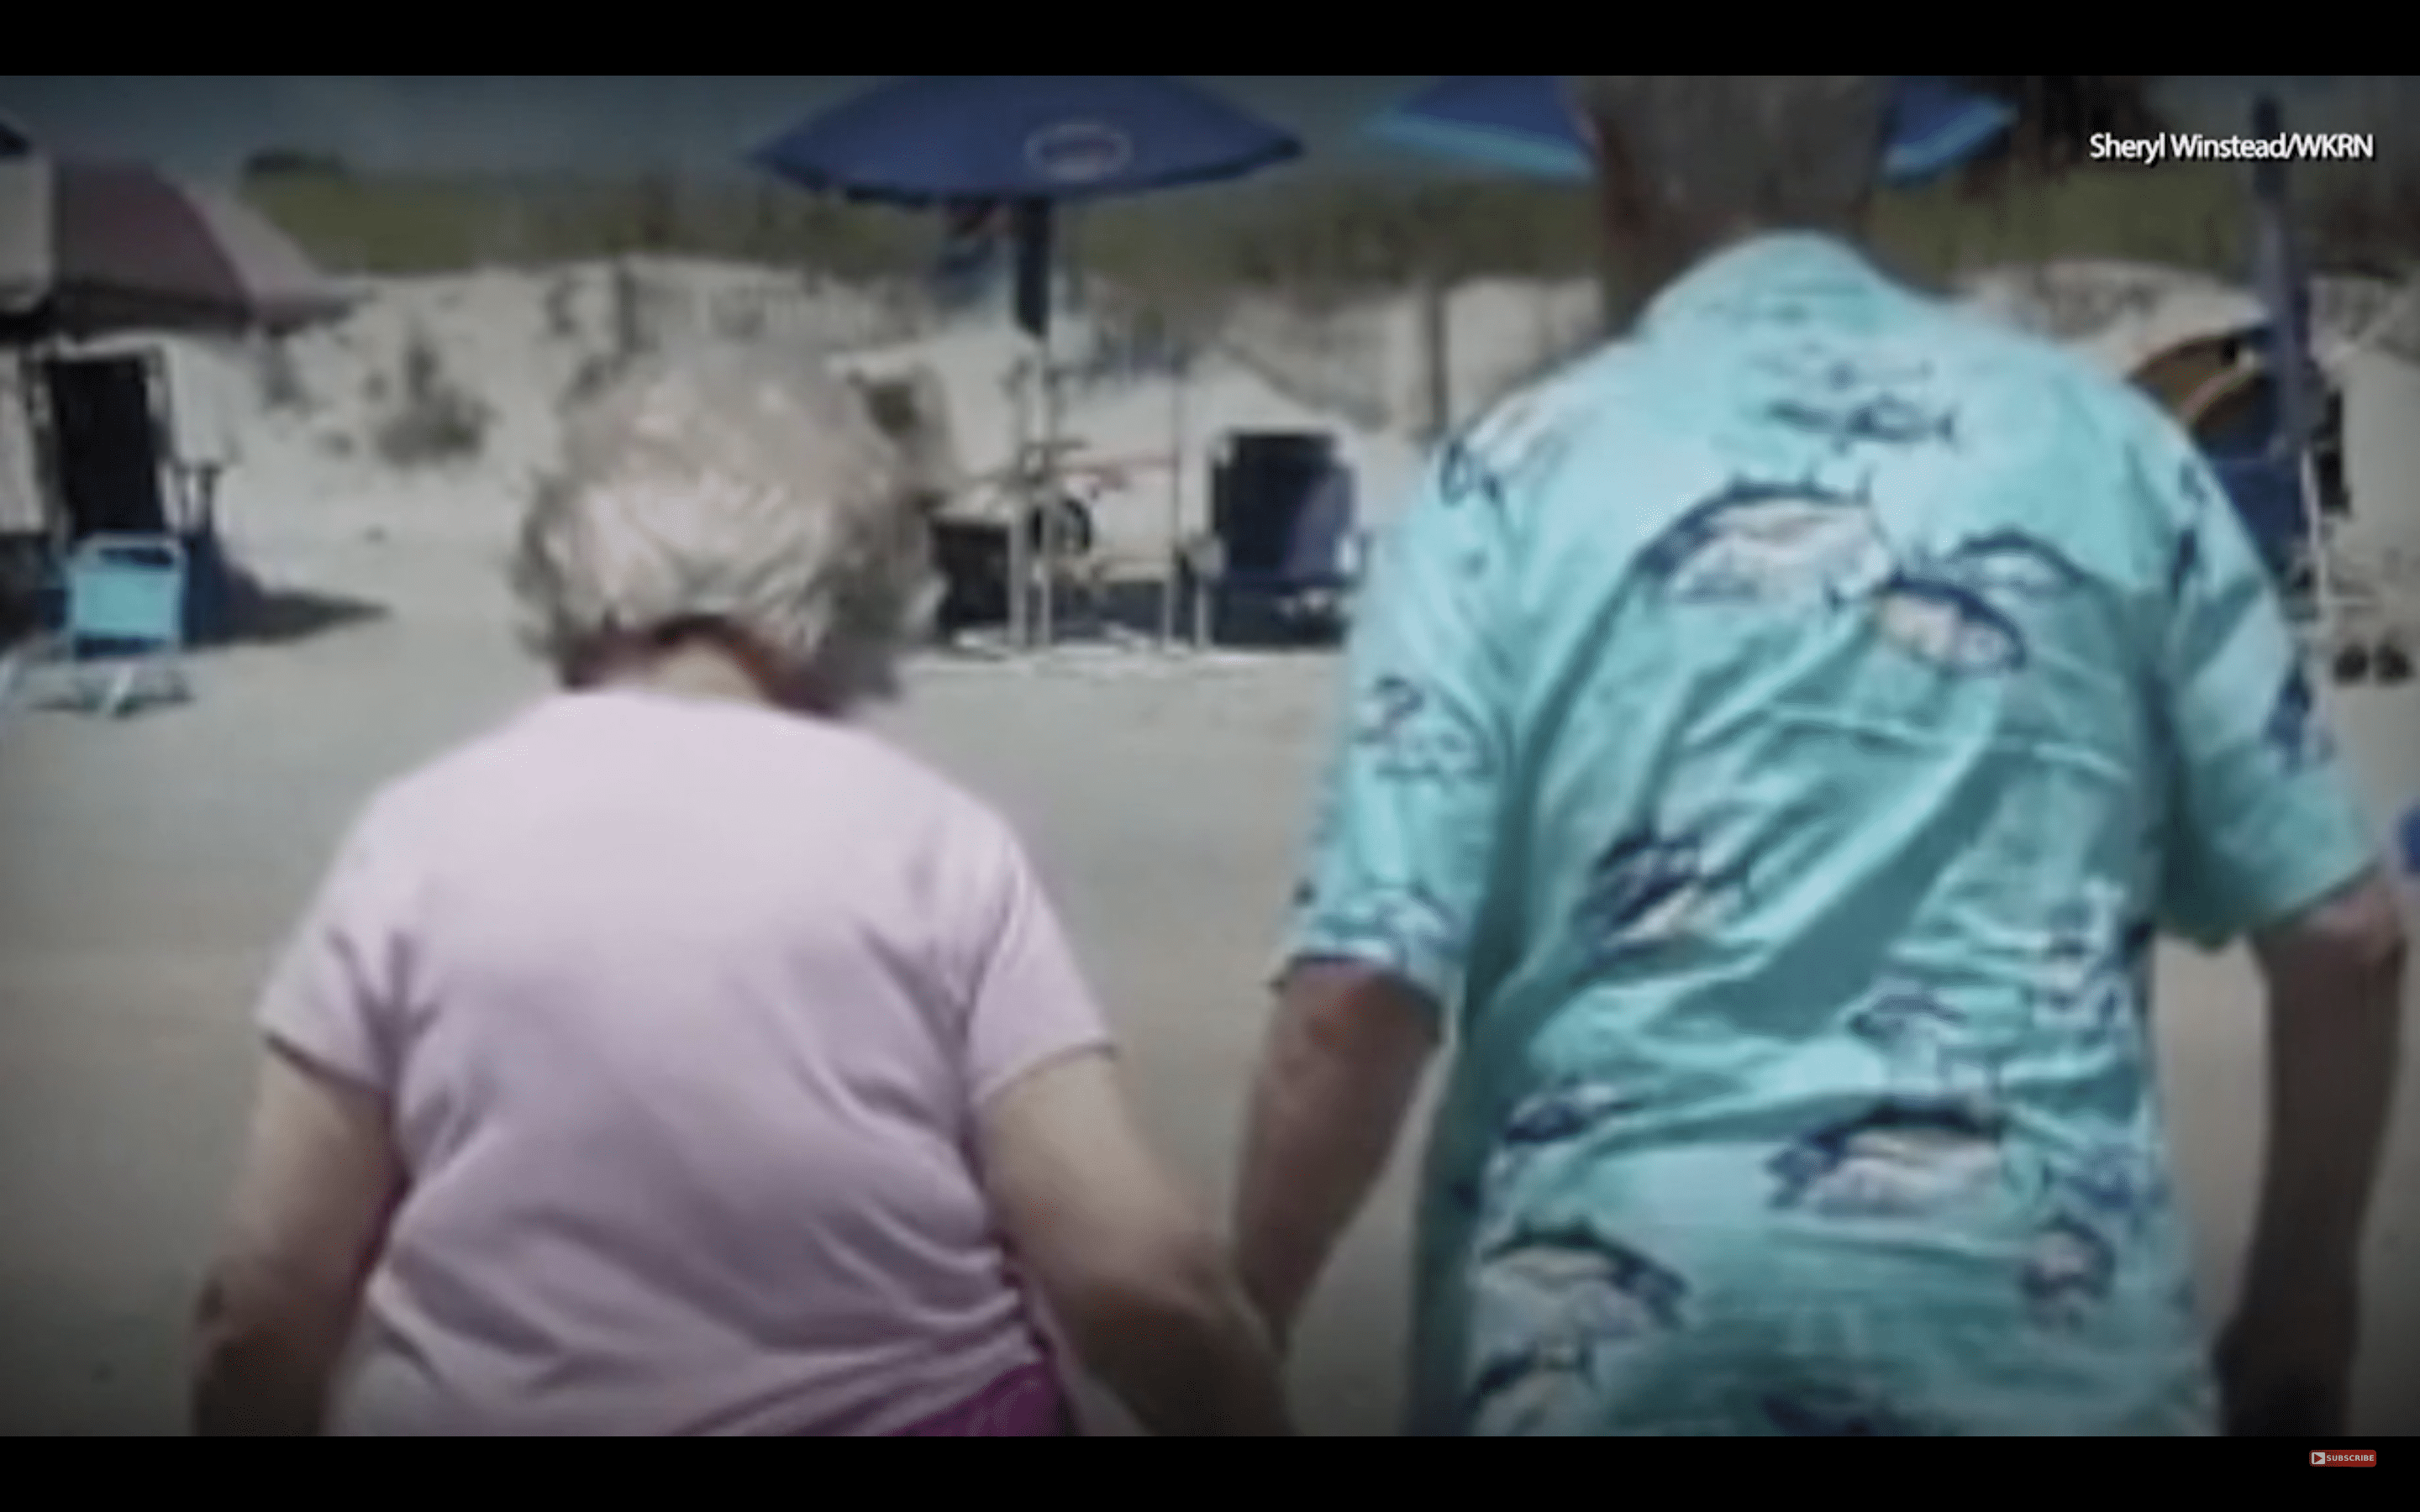 Dolores und Trent Winstead gehen händchenhaltend spazieren. | Quelle: YouTube.com/WSB-TV